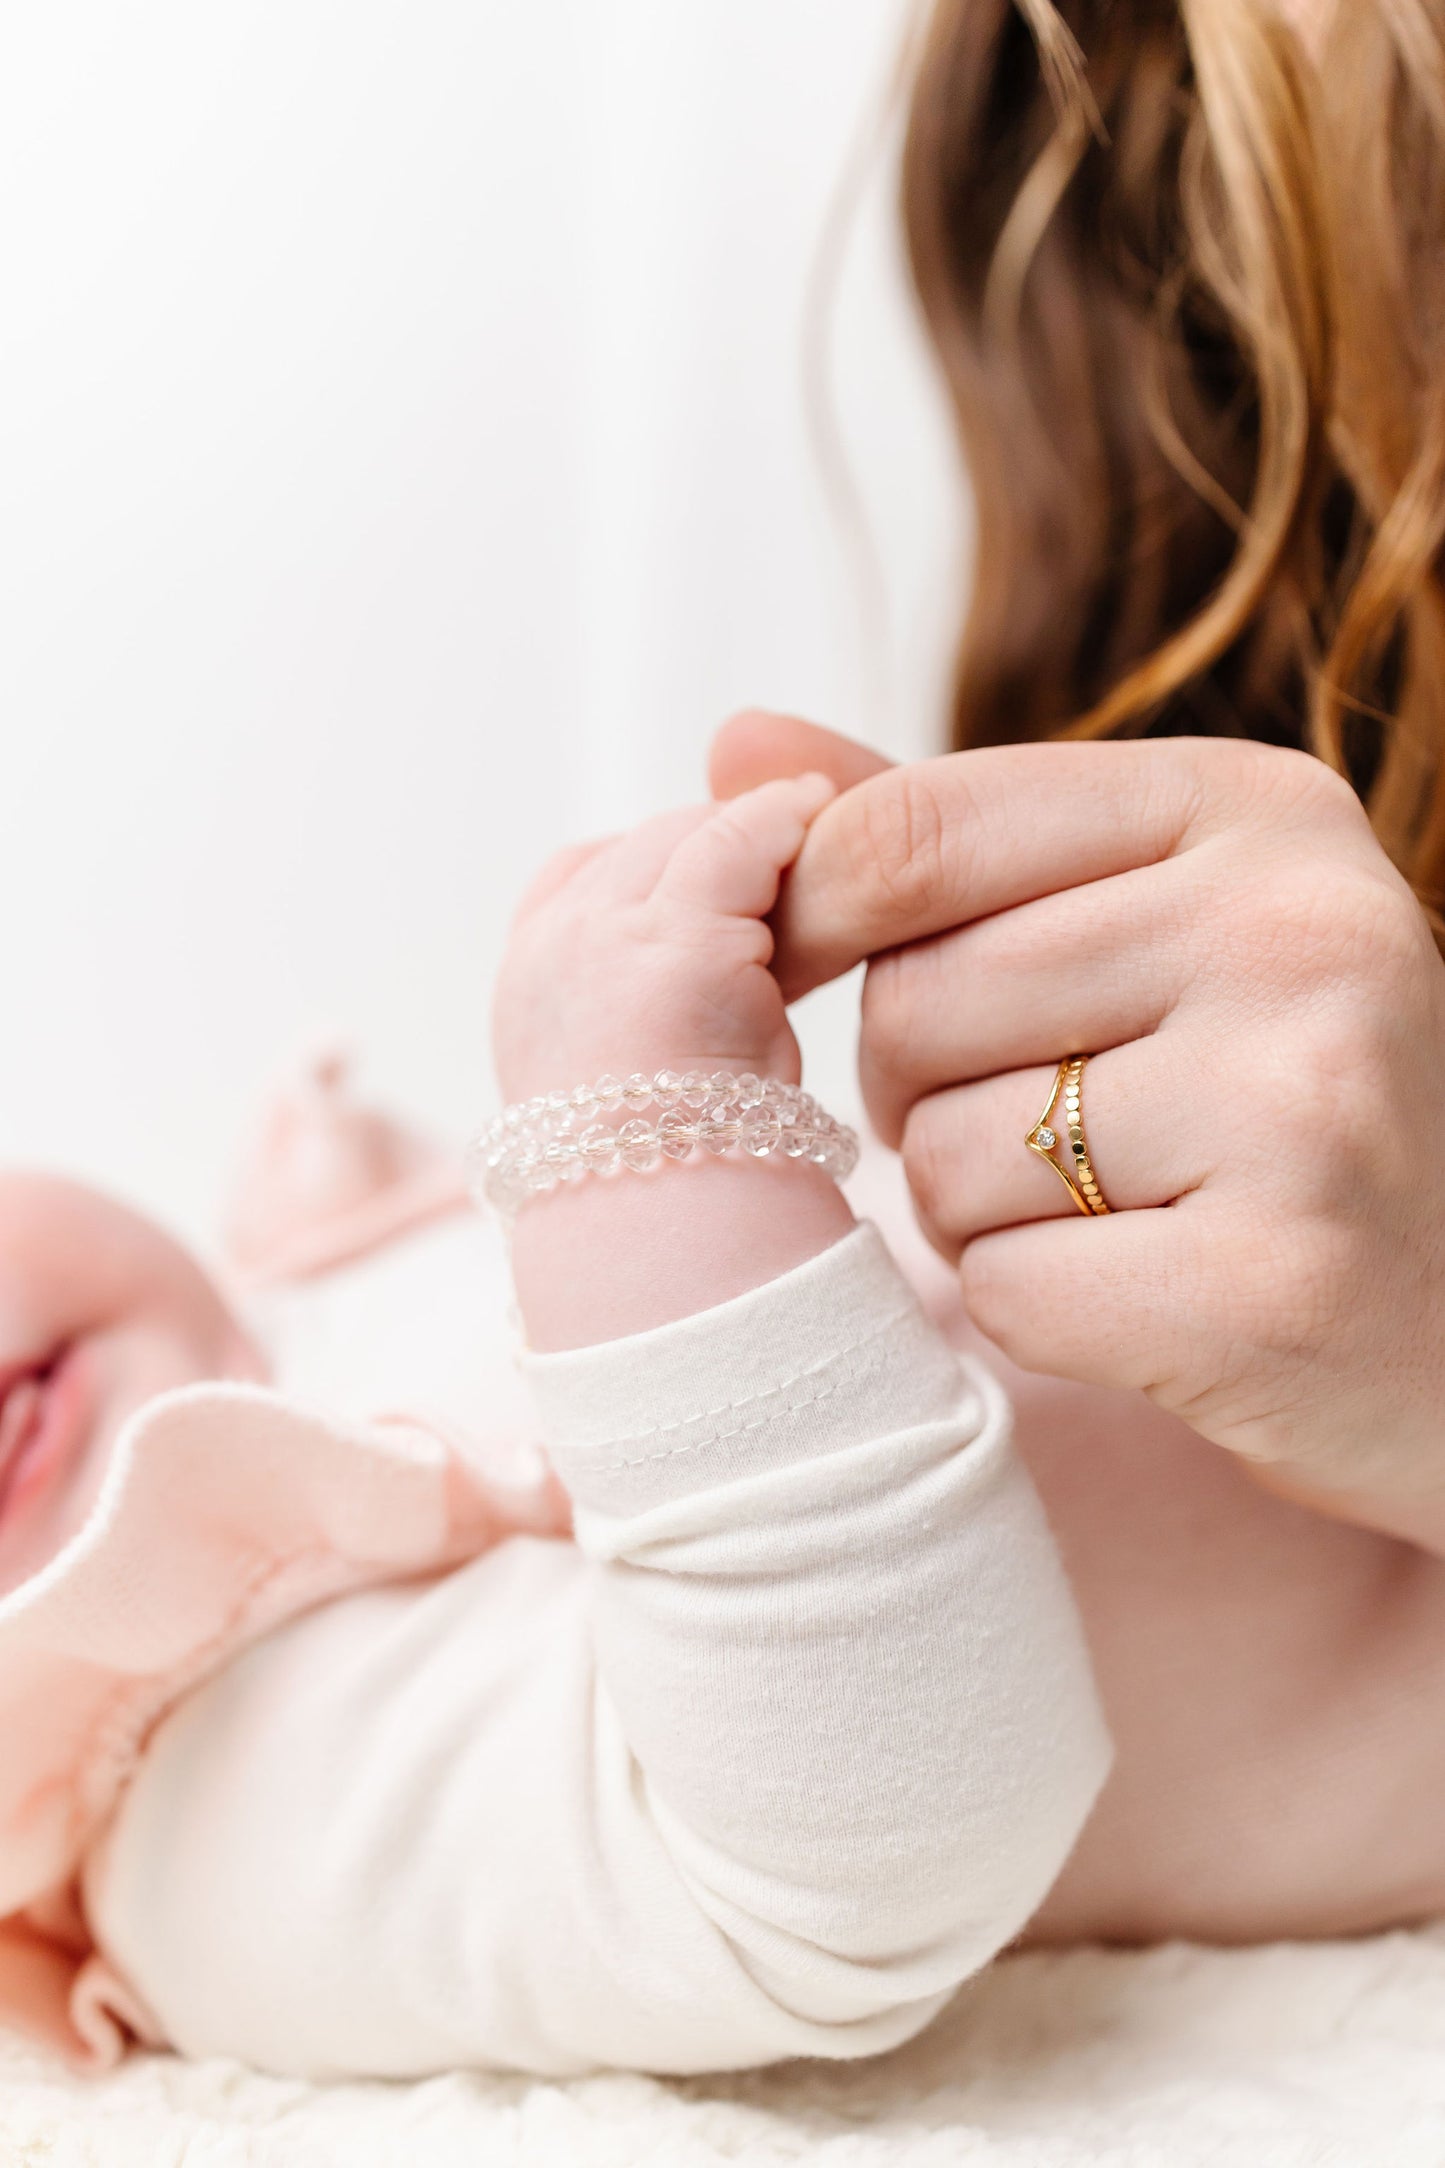 Bubbly Baby Bracelet (4MM beads)